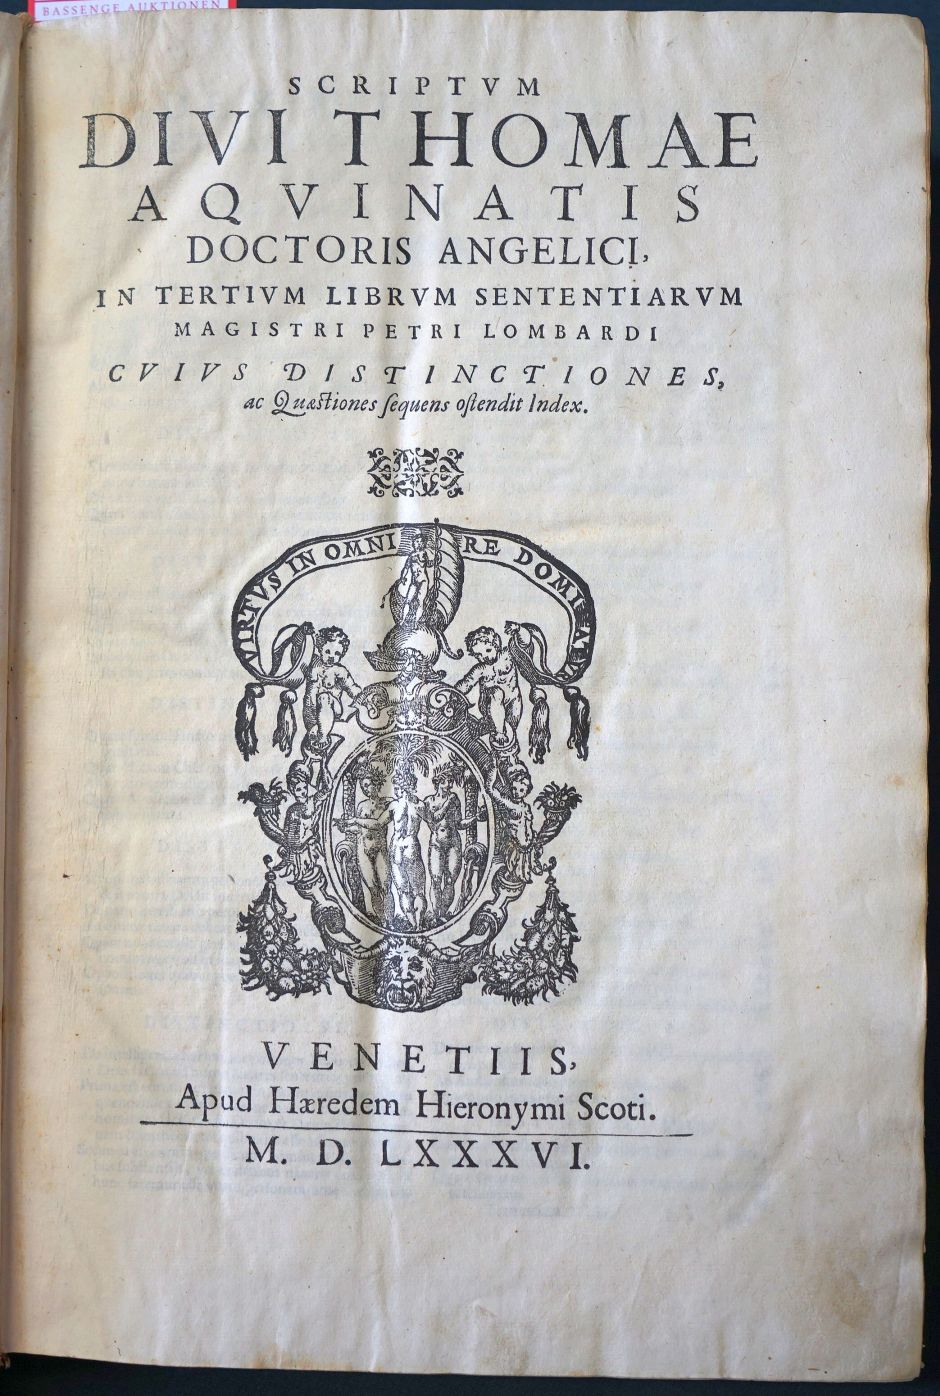 Lot 1201, Auction  115, Thomas von Aquin, Scriptum Divi Thomae Aquinatis